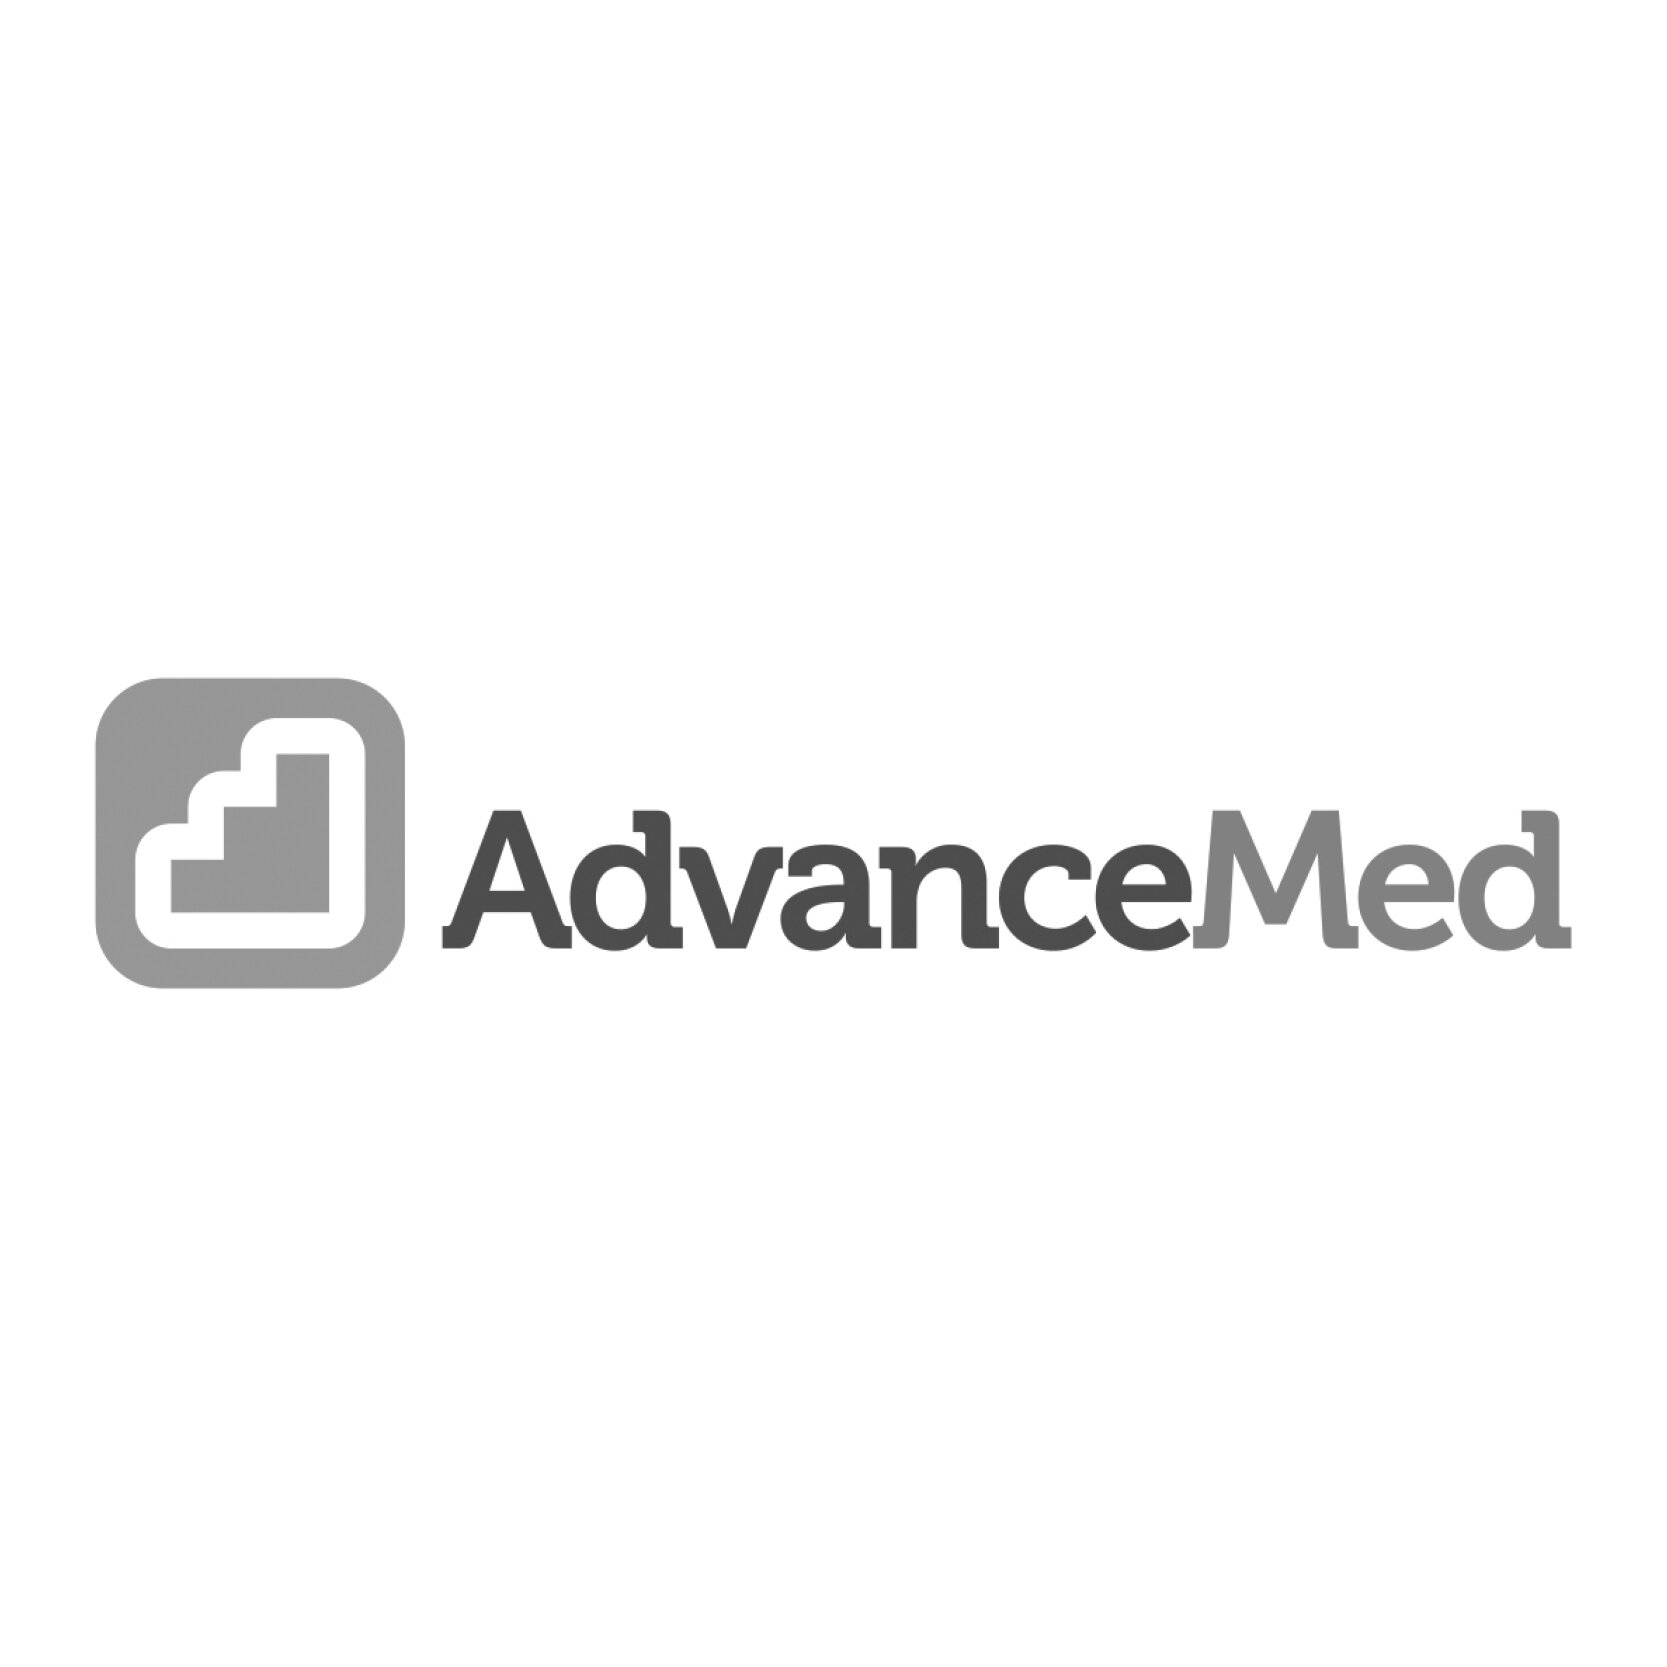 Advance Med (Copy) (Copy)